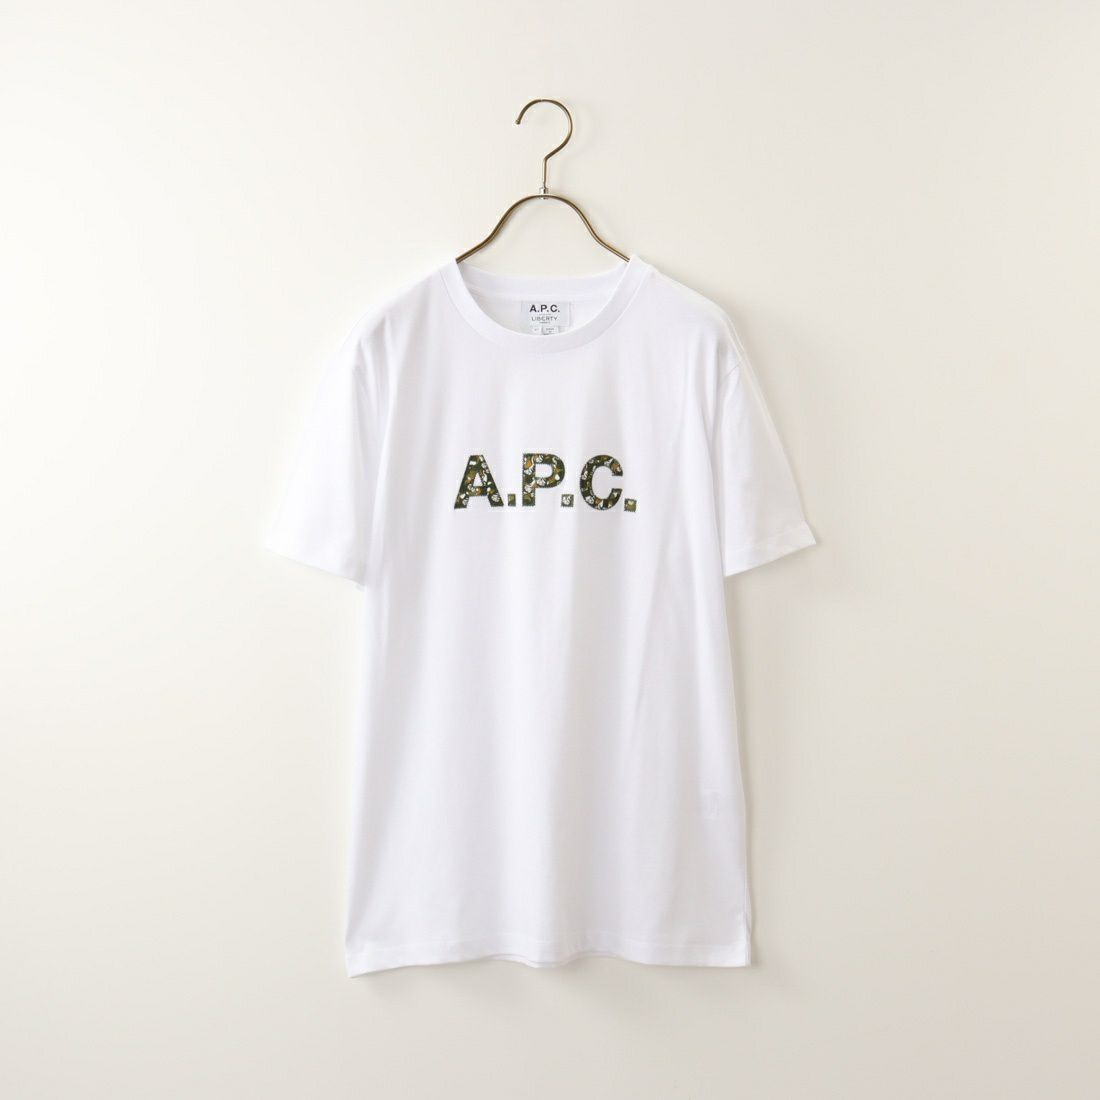 A.P.C. [アー・ペー・セー] カモフラージュロゴTシャツ [T-SHIRT-CAMO] 90 BLANC